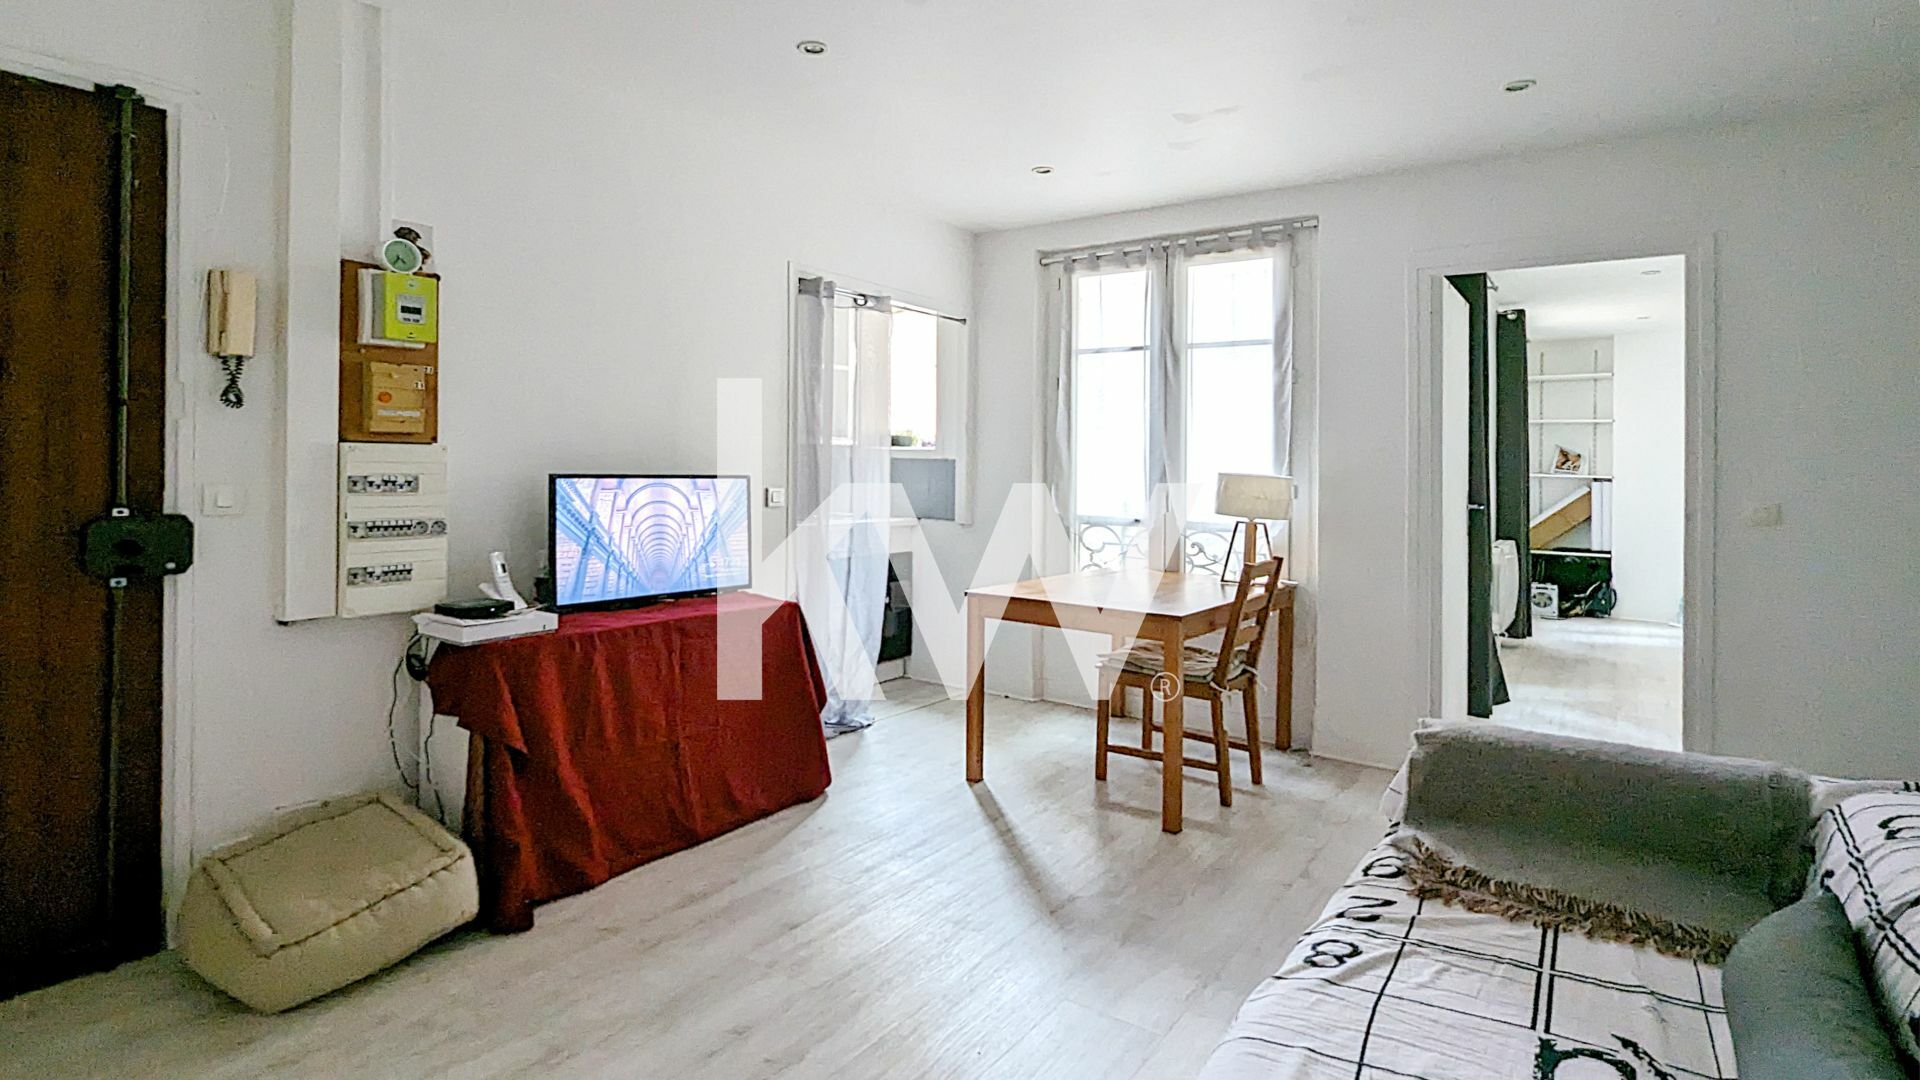 VENTE : appartement T3 (48 m²) dans le 13e arrondissement de Paris